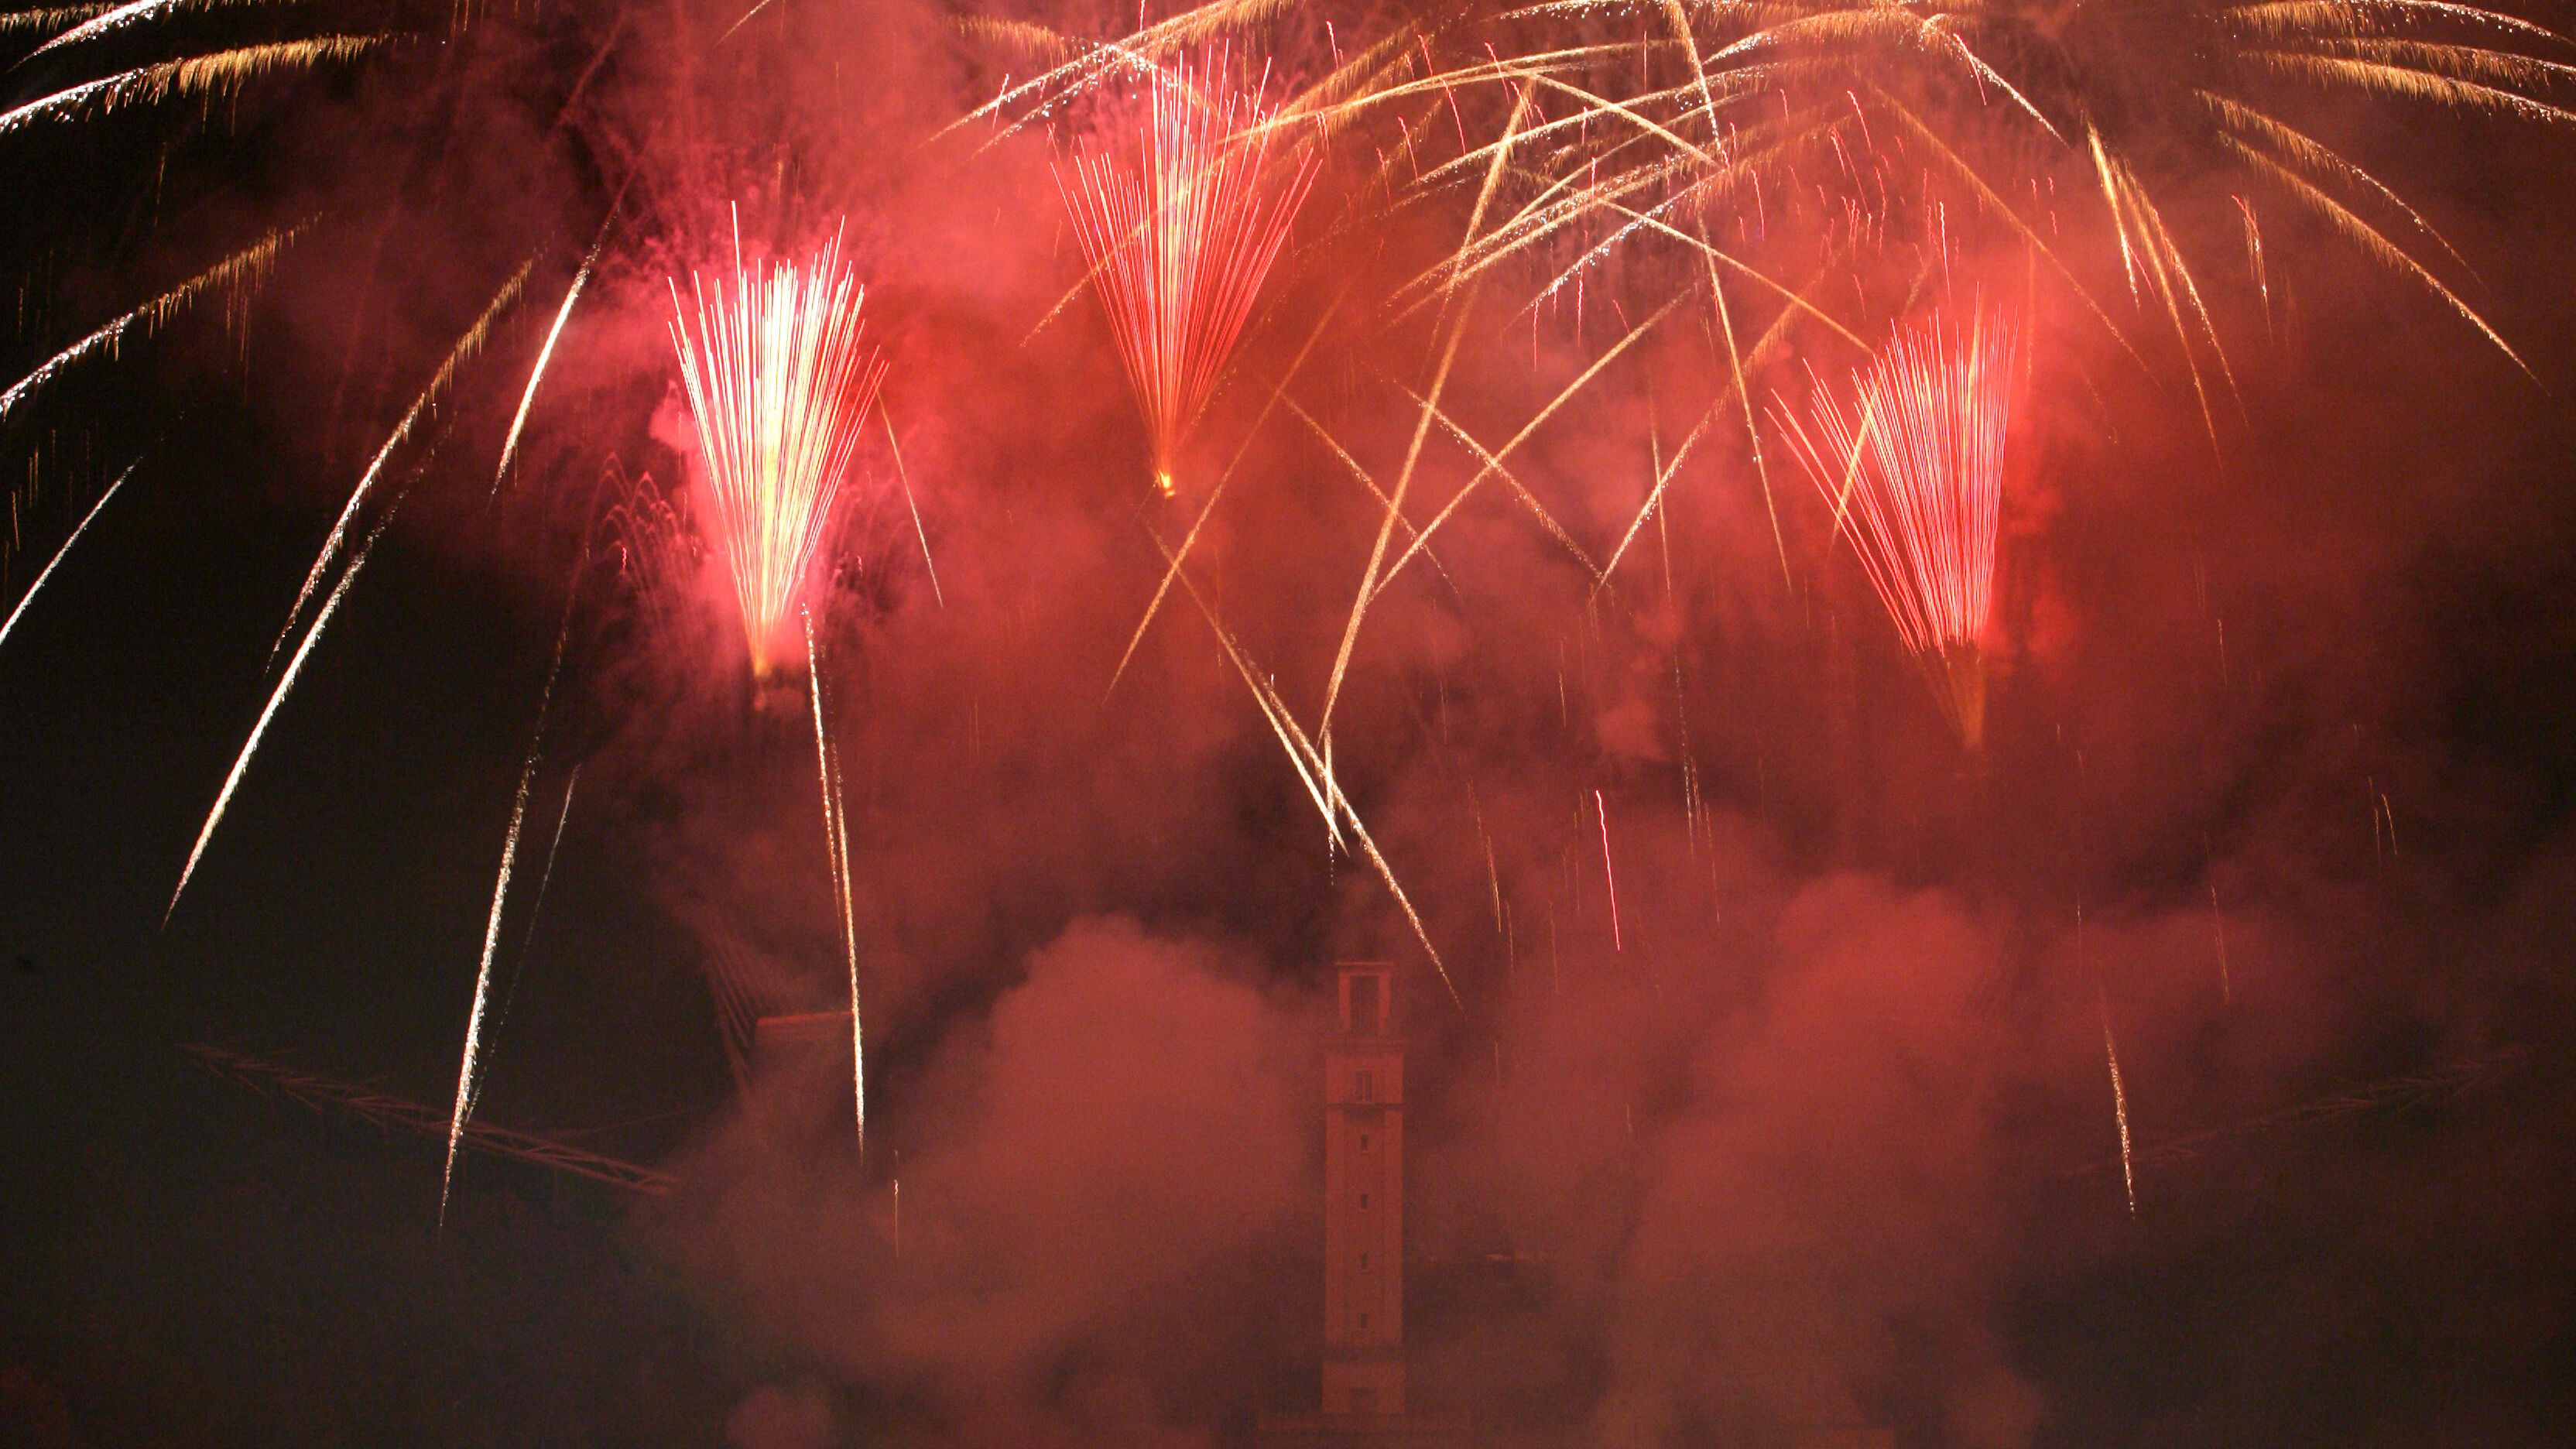 Feuerwerk über der Bühne der Festwiese bei Nacht.